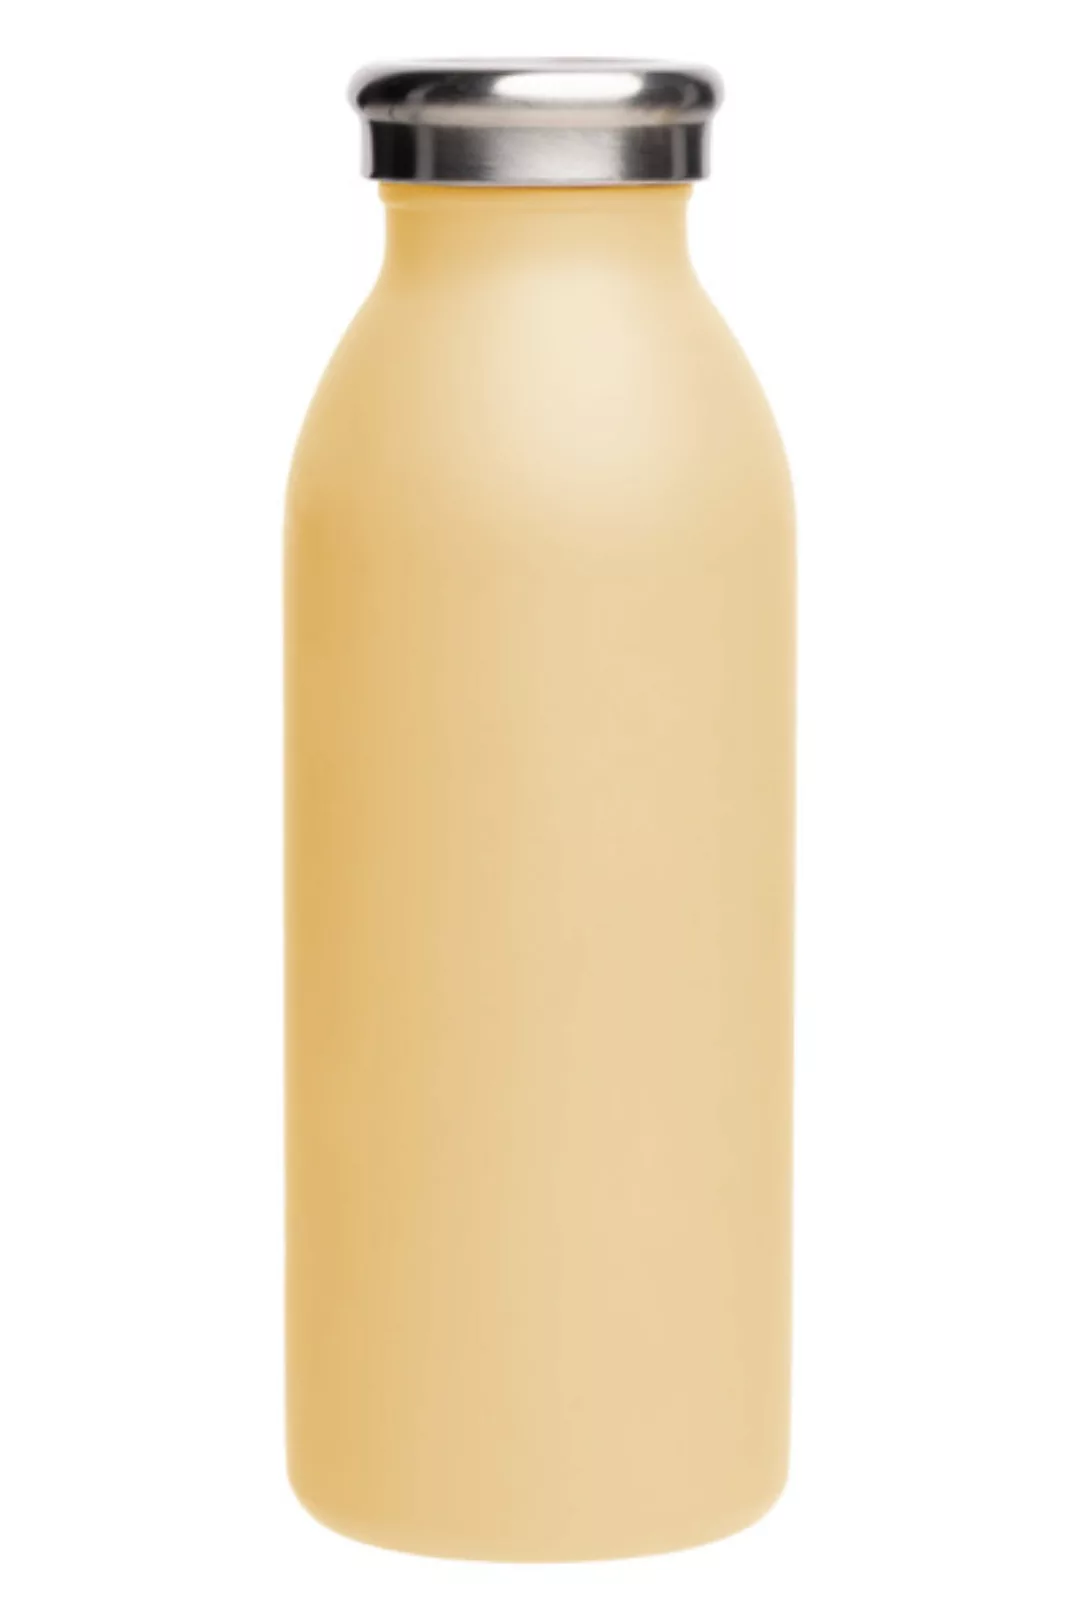 Trinkflasche Plain Aus Edelstahl 500 Ml (Bw171, Bw172, Bw173, Bw174, Bw175, günstig online kaufen